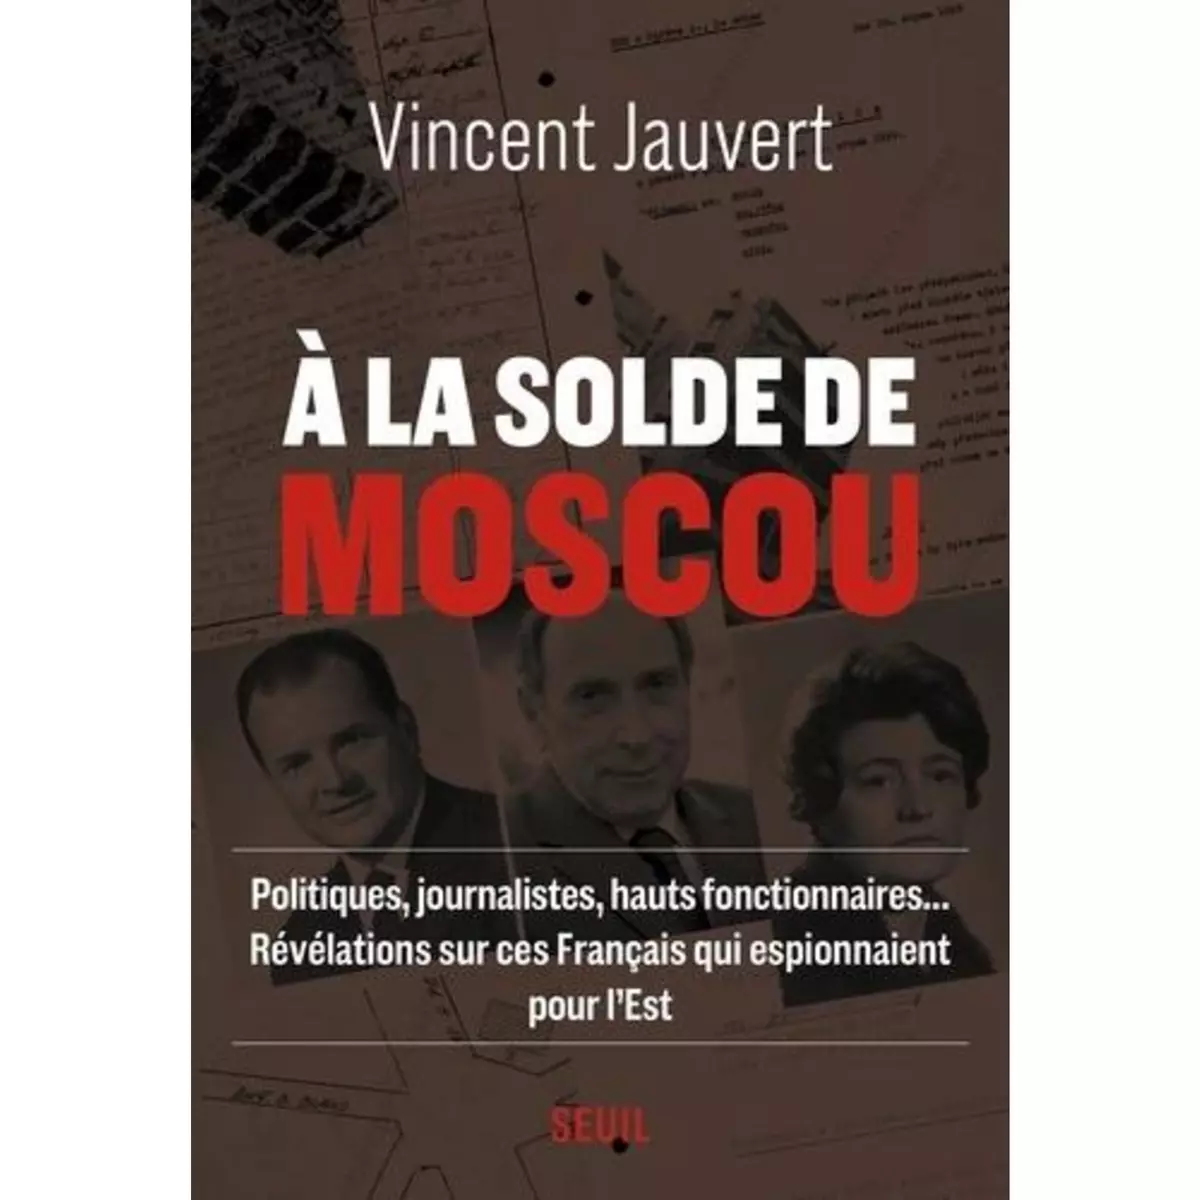  A LA SOLDE DE MOSCOU, Jauvert Vincent